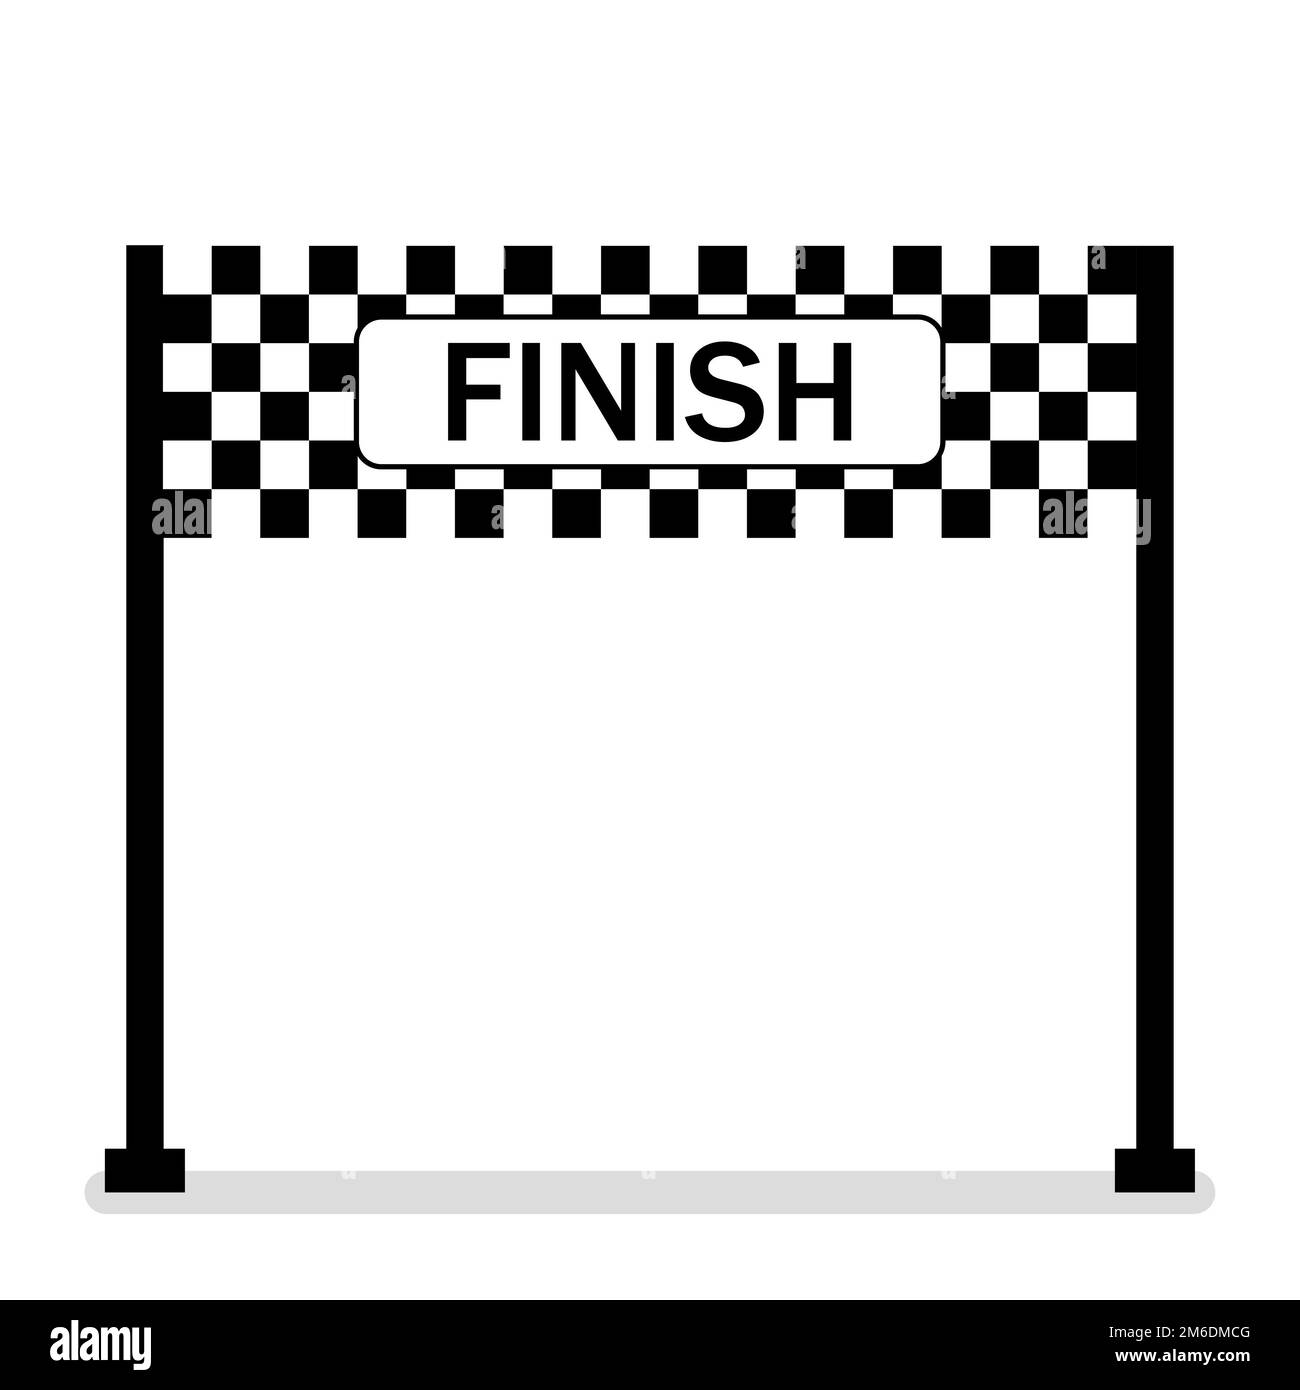 broken finish line banner